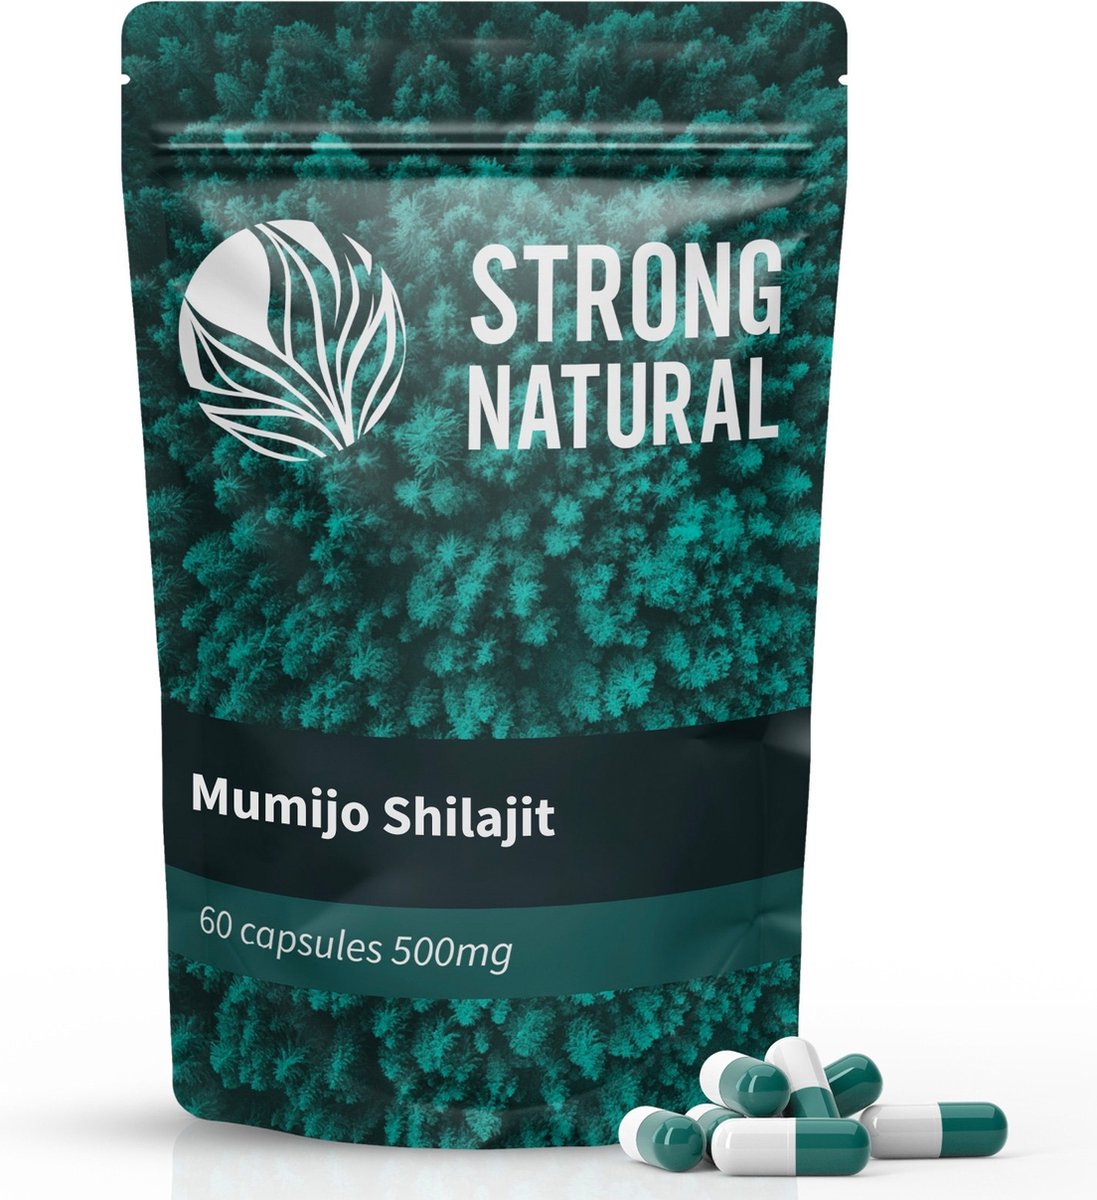 Strong Natural - Mumijo Shilajit - 10:1 Extract - 60 capsules 500mg - Himalaya